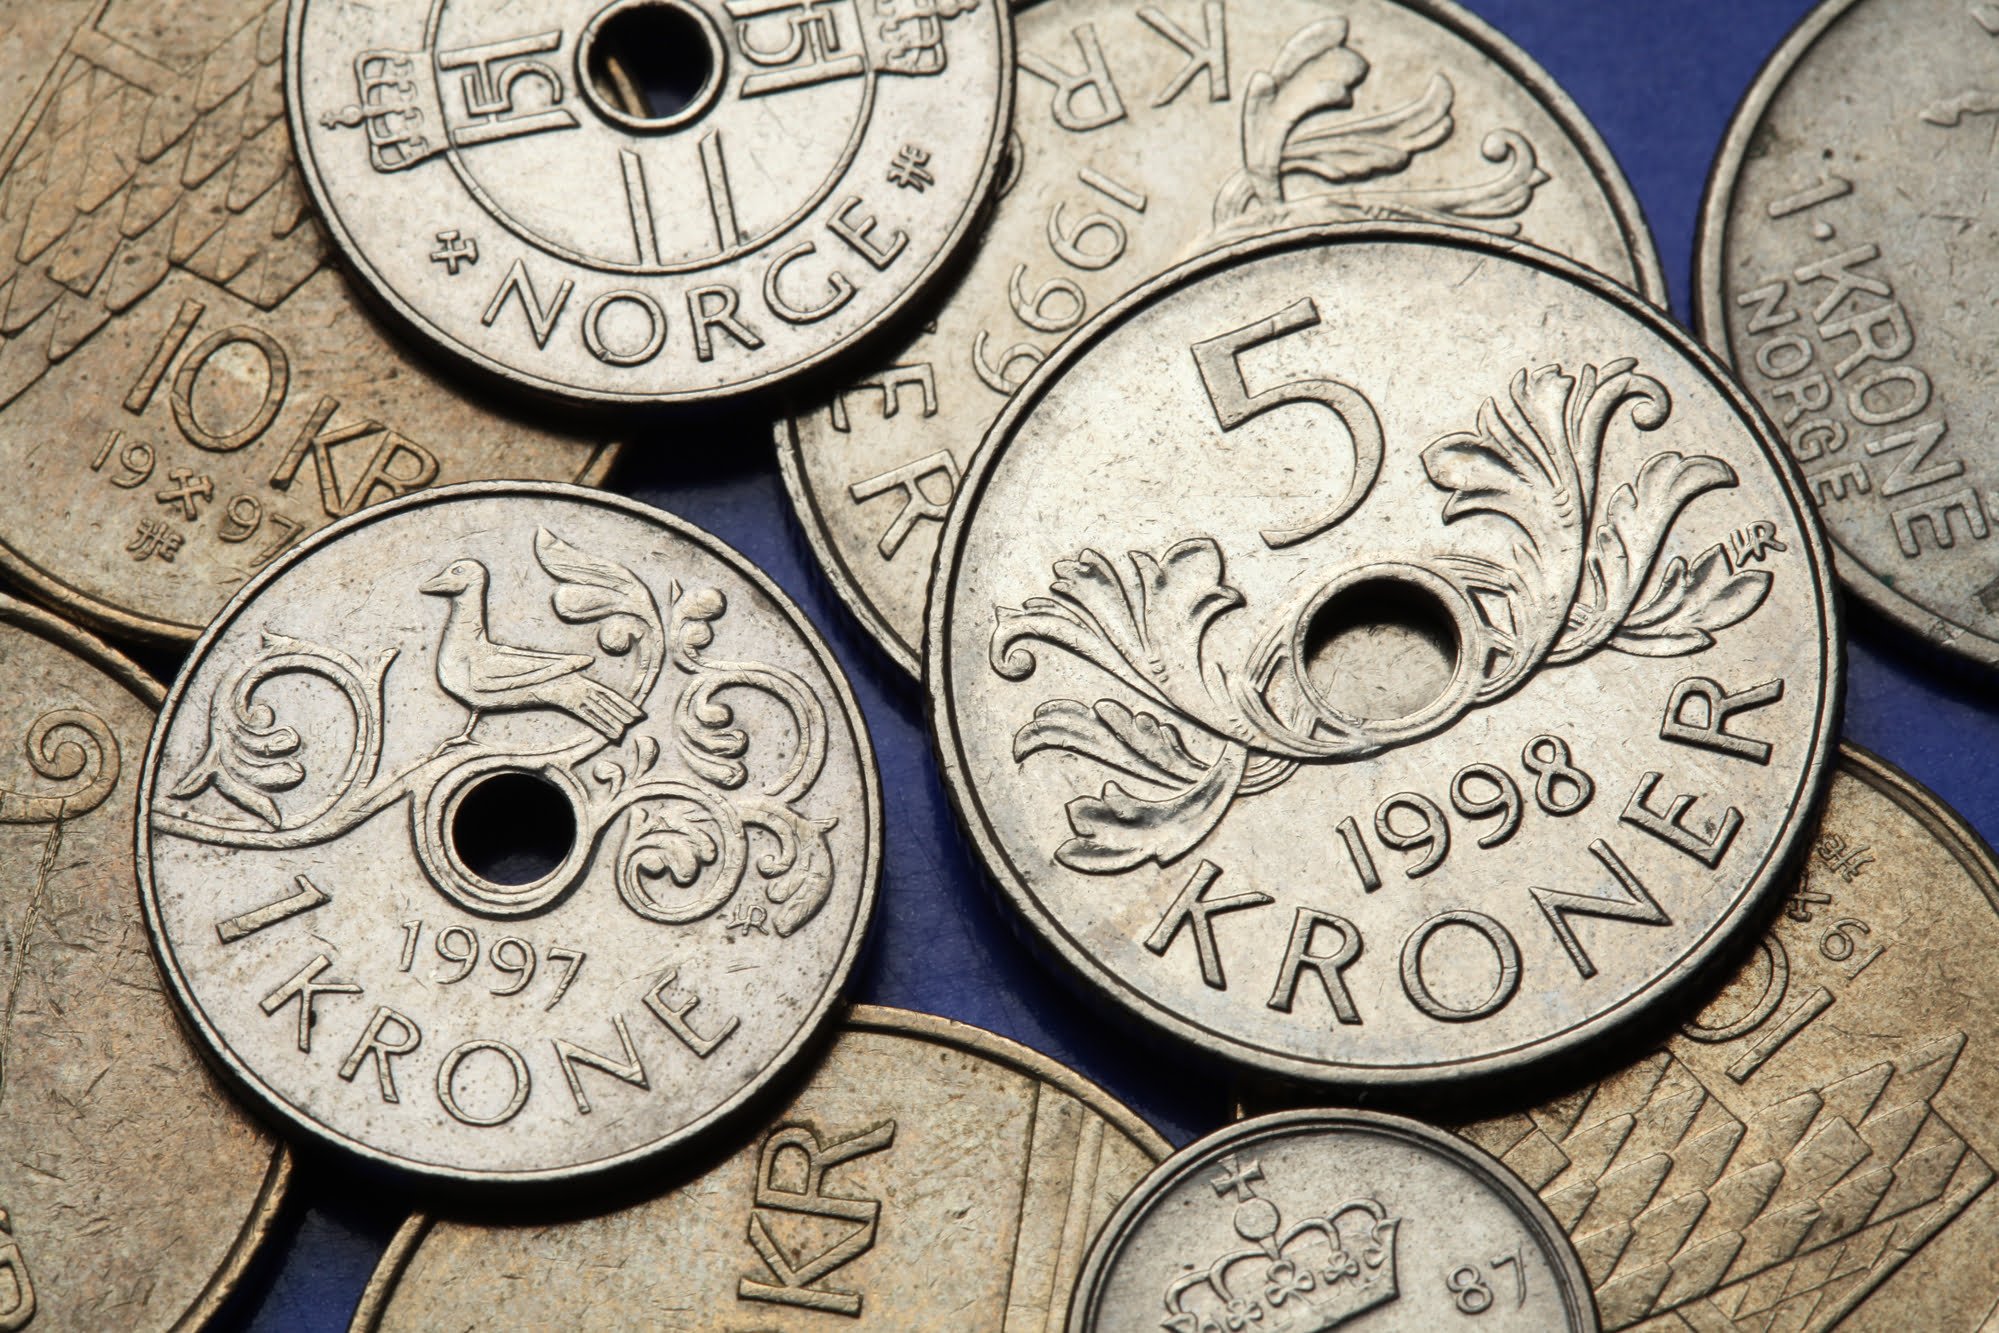 10 Norway Coins Norwegian Ore Kroner Scandinavian Old